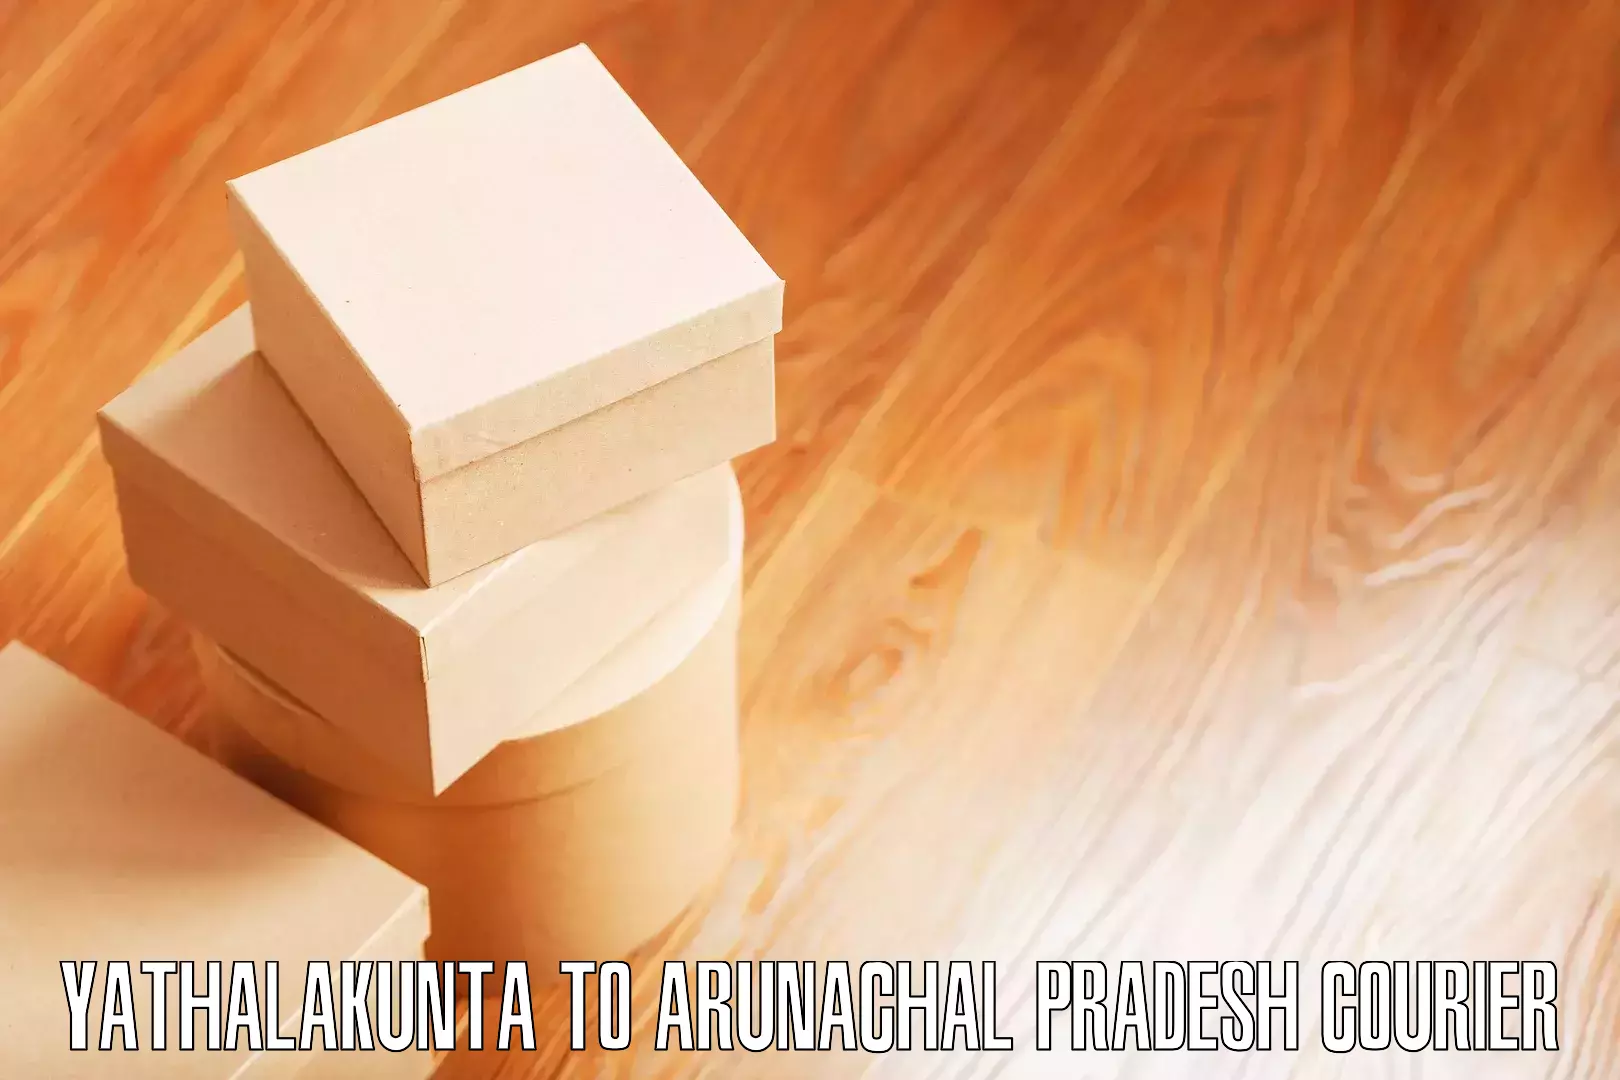 Furniture moving strategies Yathalakunta to Papum Pare